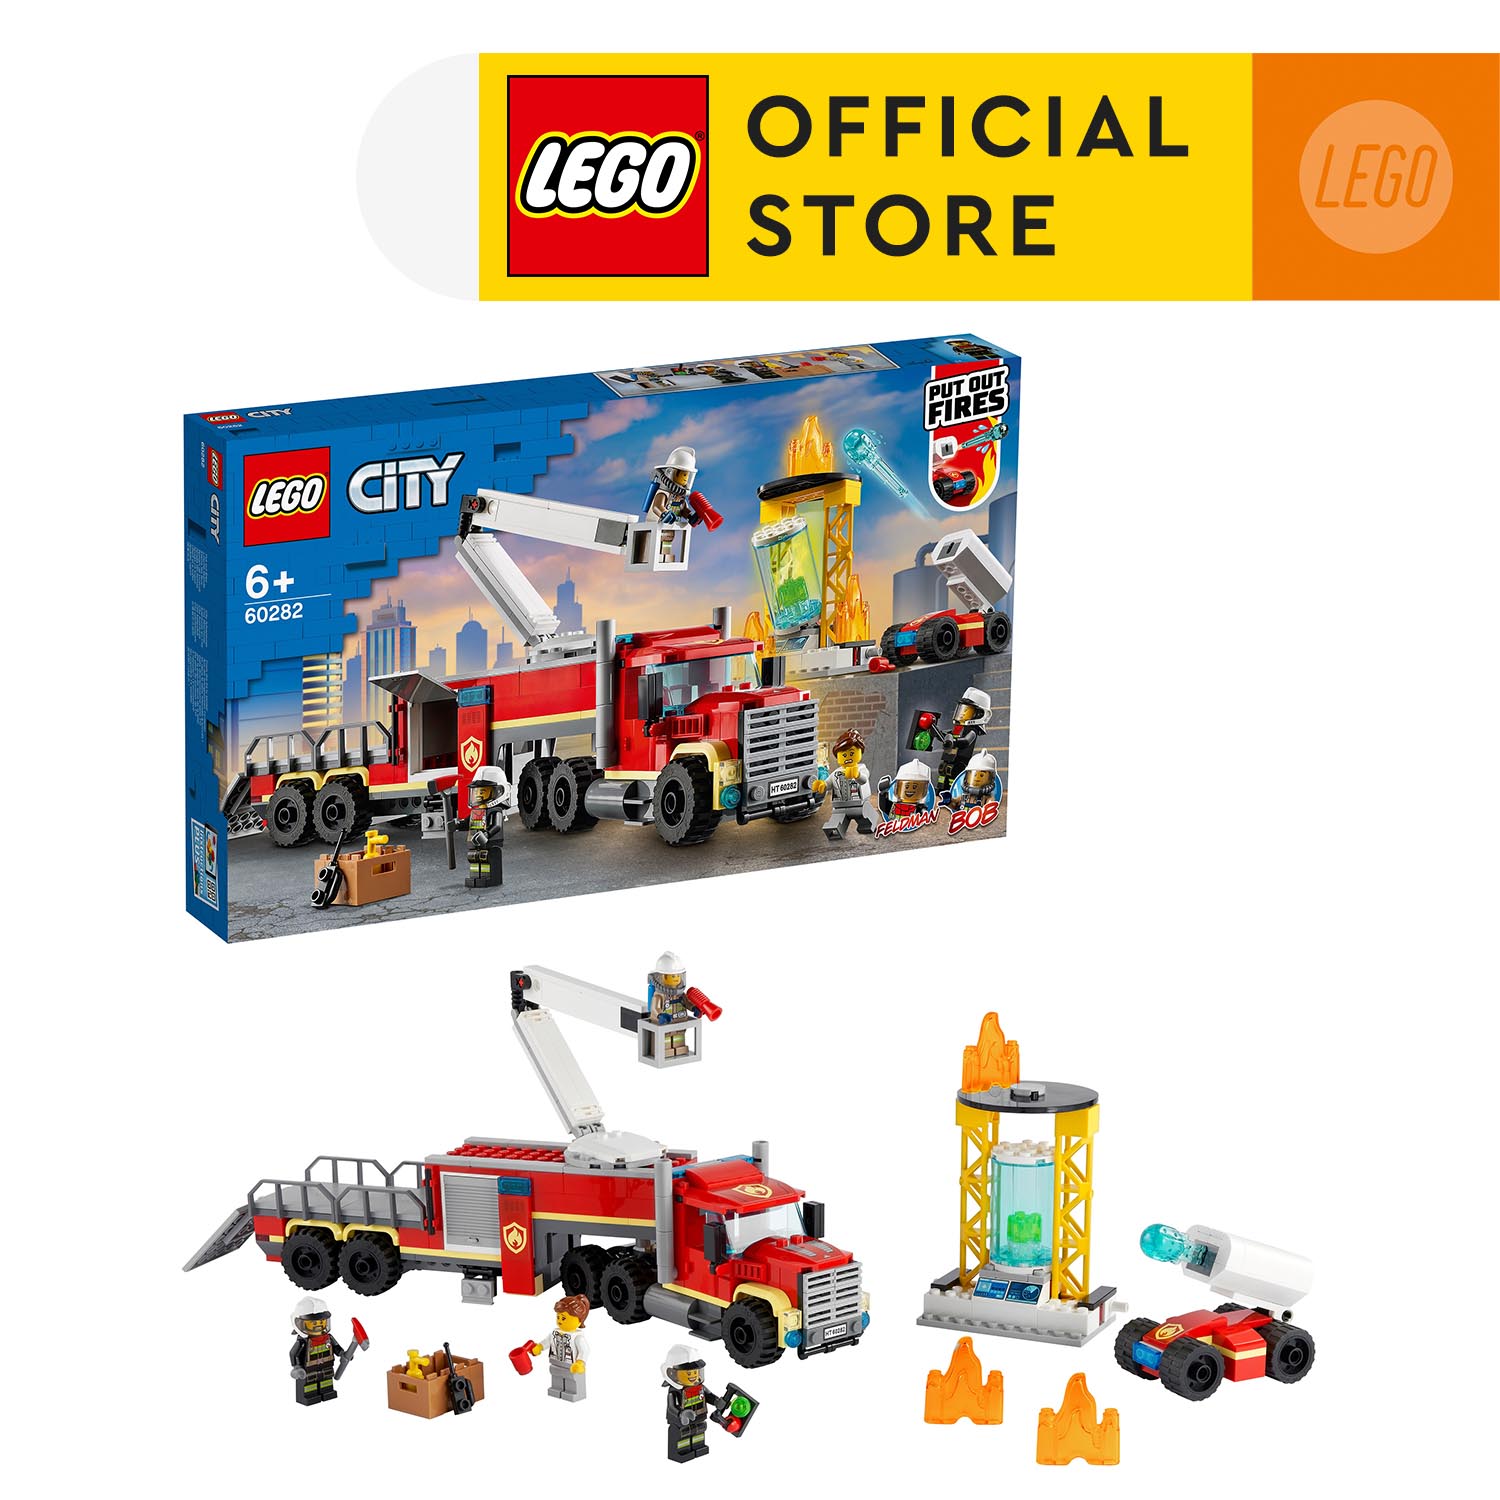 Đồ Chơi Lắp Ráp - LEGO CITY 60282 Xe Đầu Kéo Chữa Cháy ( 380 Chi tiết) Bộ gạch đồ chơi lắp ráp cho trẻ em